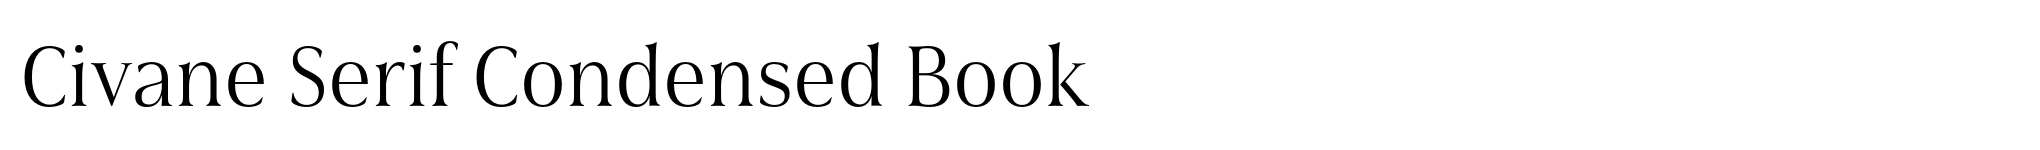 Civane Serif Condensed Book image